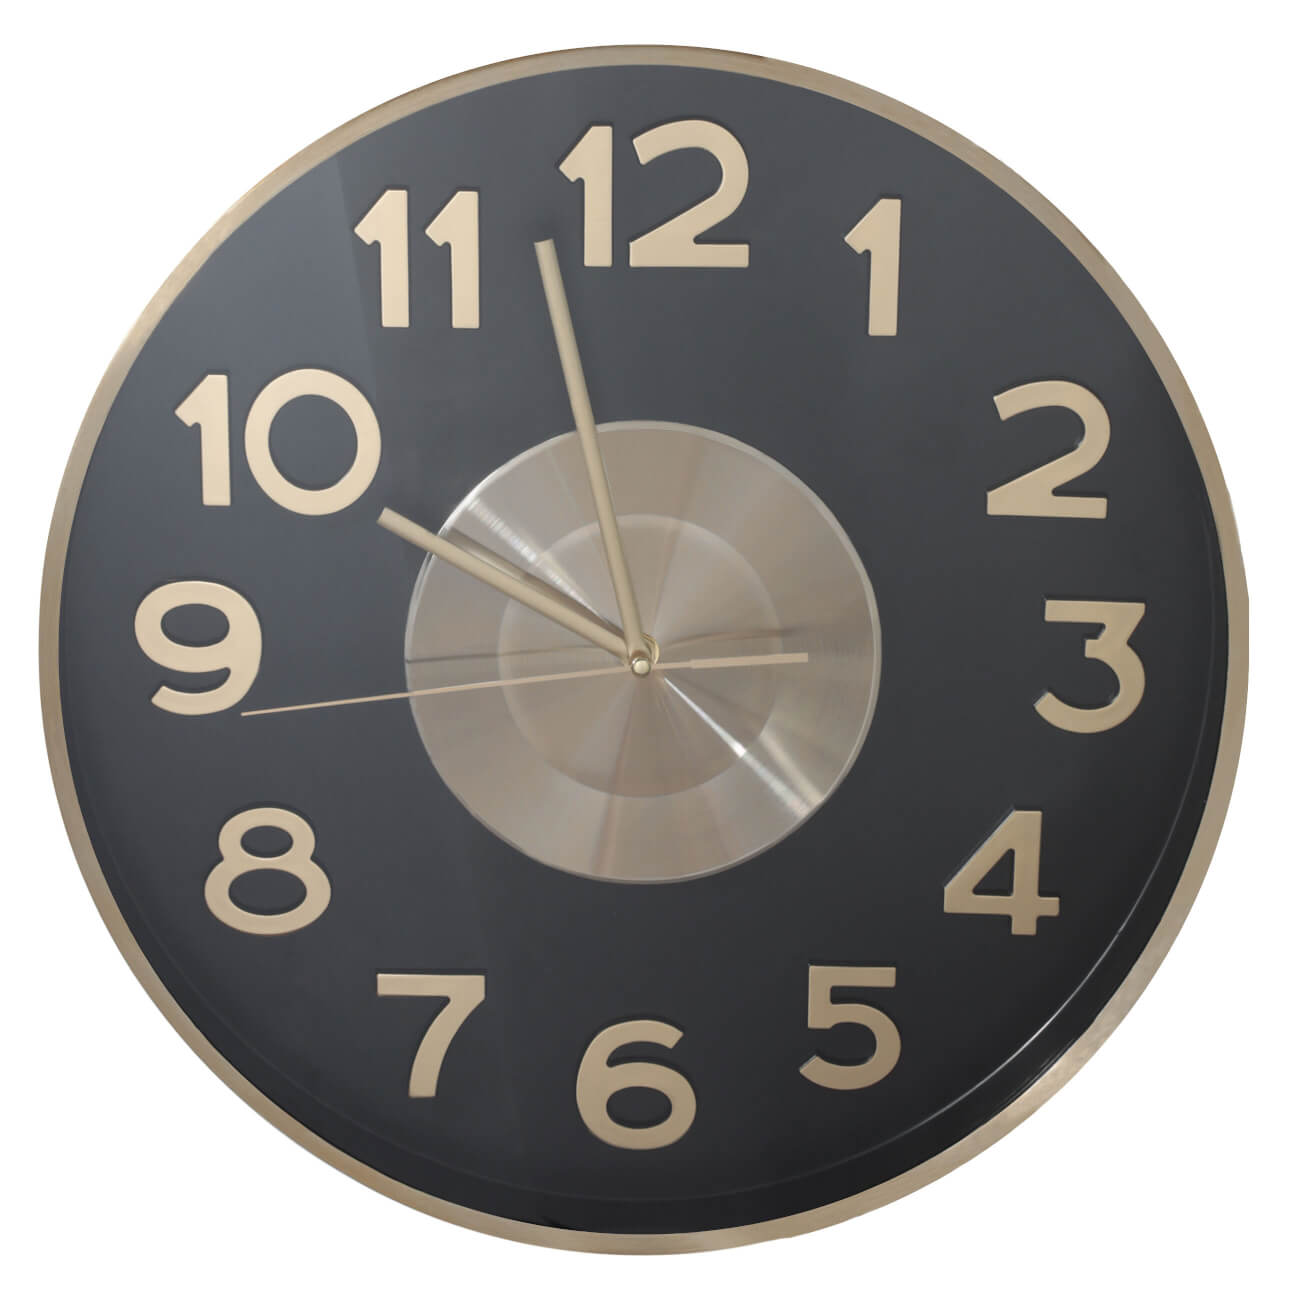 Часы настенные, 40 см, металл/стекло, круглые, черно-золотистые, Диск, Dial часы настенные 61 см металл дерево круглые черно золотистые штурвал discovery